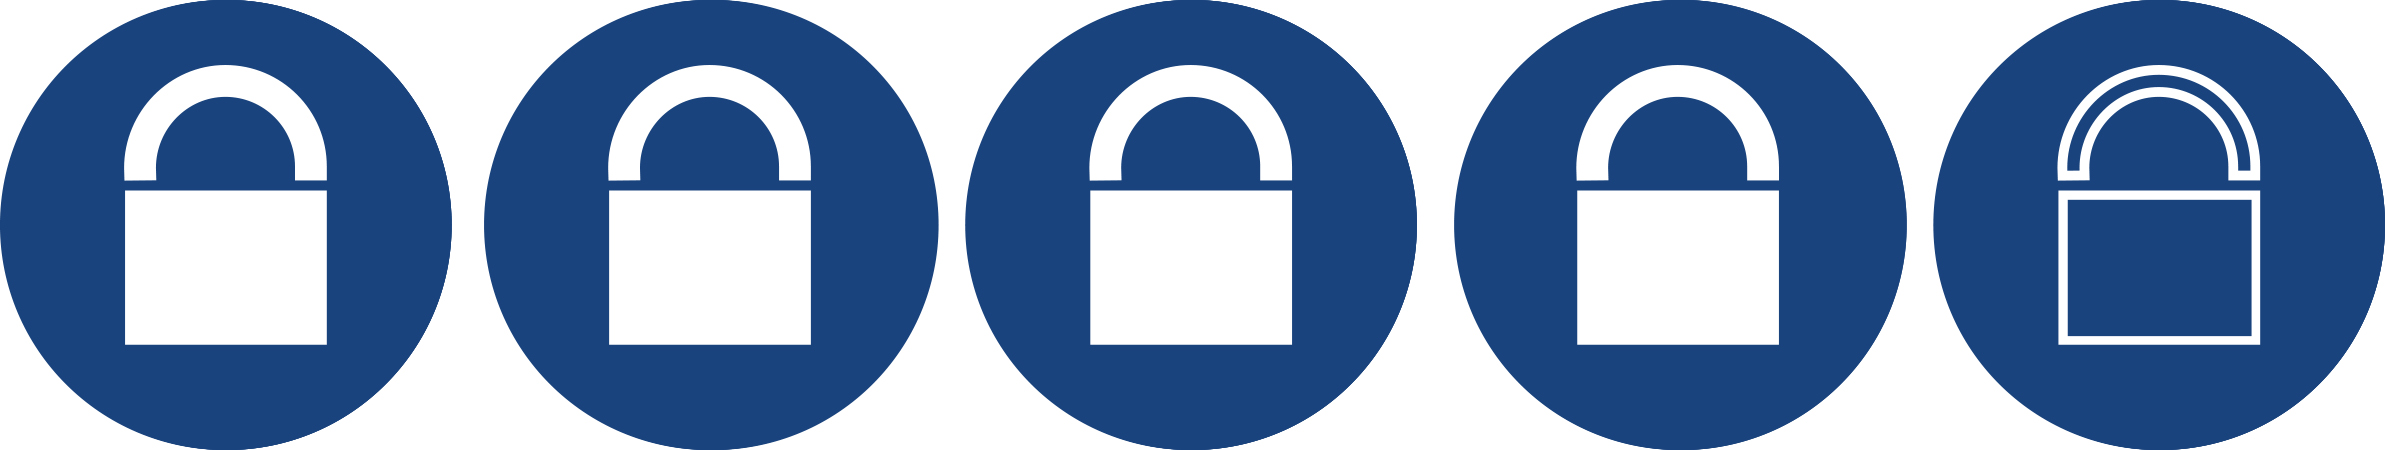 Classification de sécurité Viro https://www.viro.it/files/immagini/2RuoteFR.jpg _blank